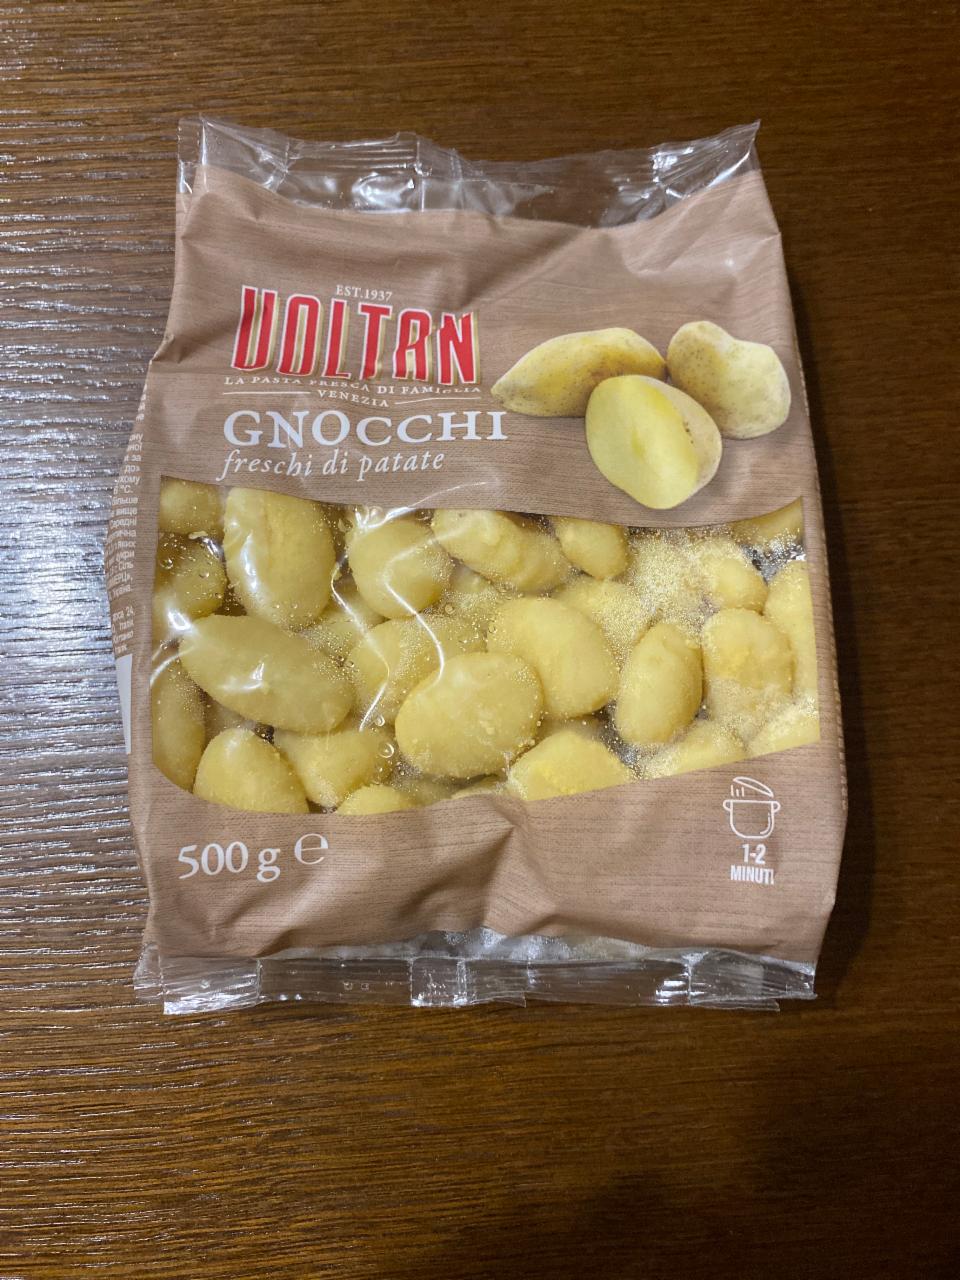 Фото - ньокки картофельные Voltan